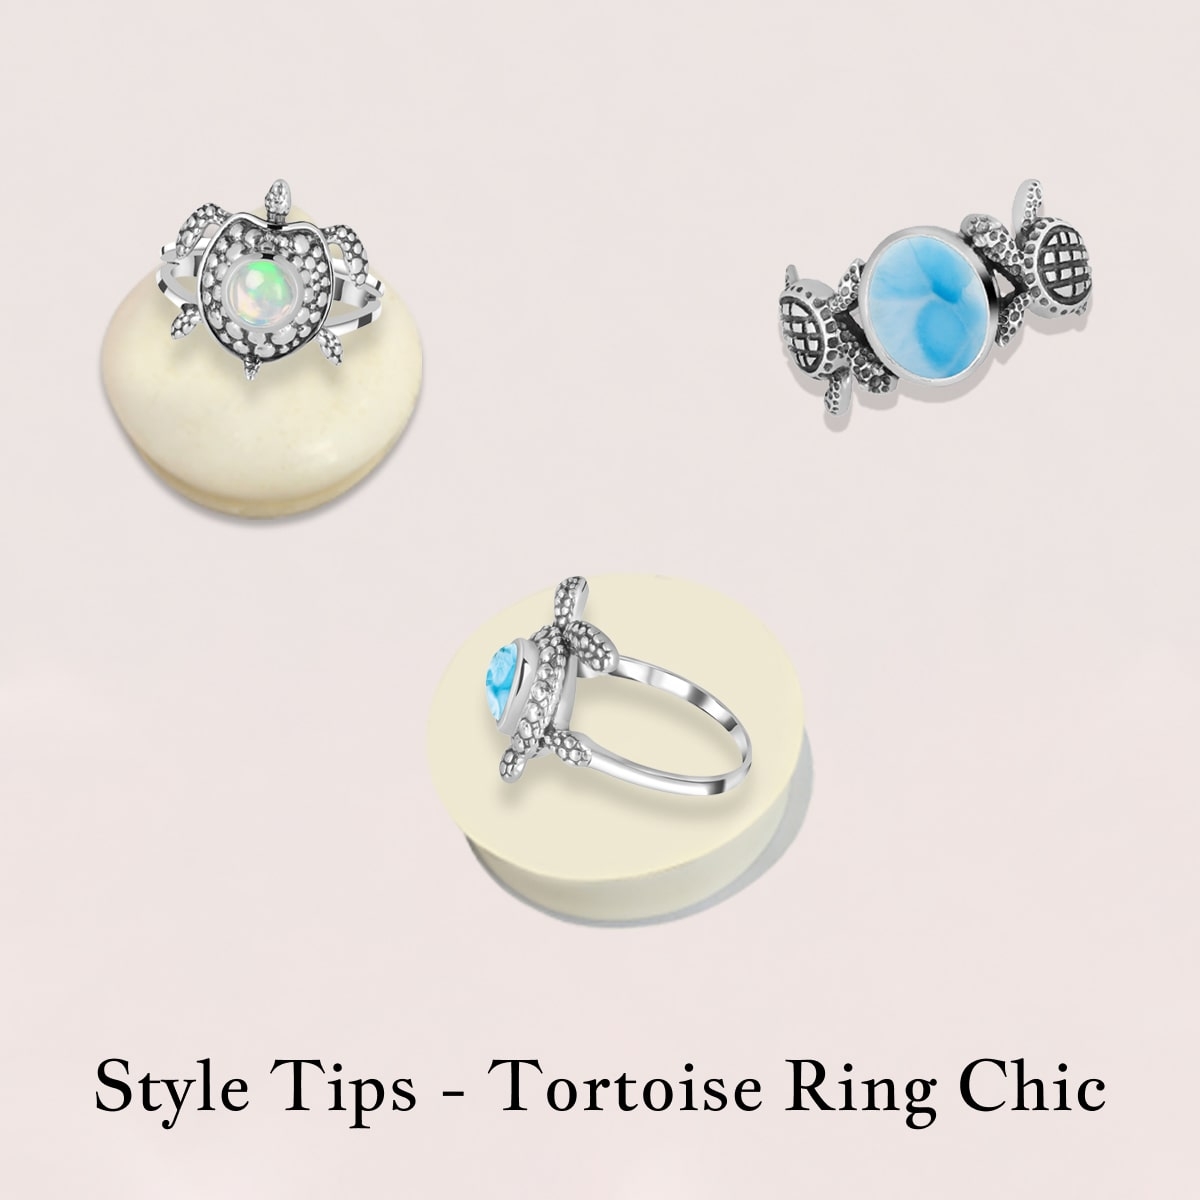 Tips for wearing Tortoise Ring